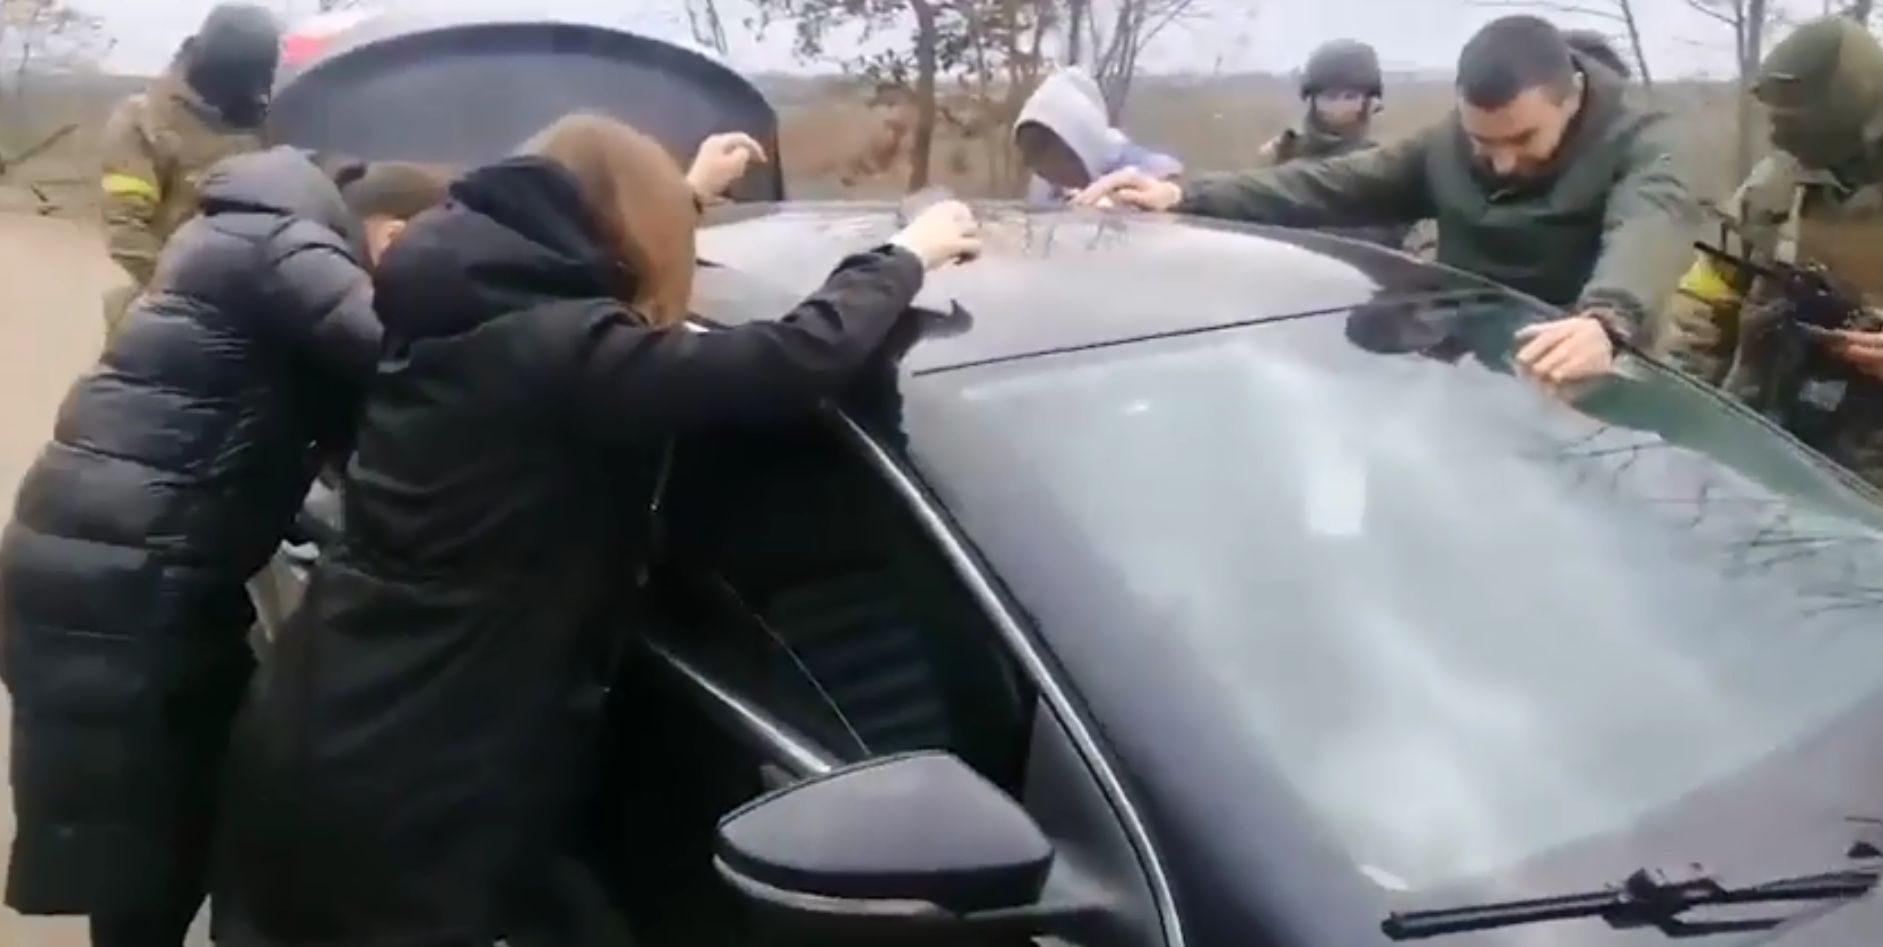 Katonai ellenőrzés Ukrajnában - váratlan fordulattal - VIDEÓ